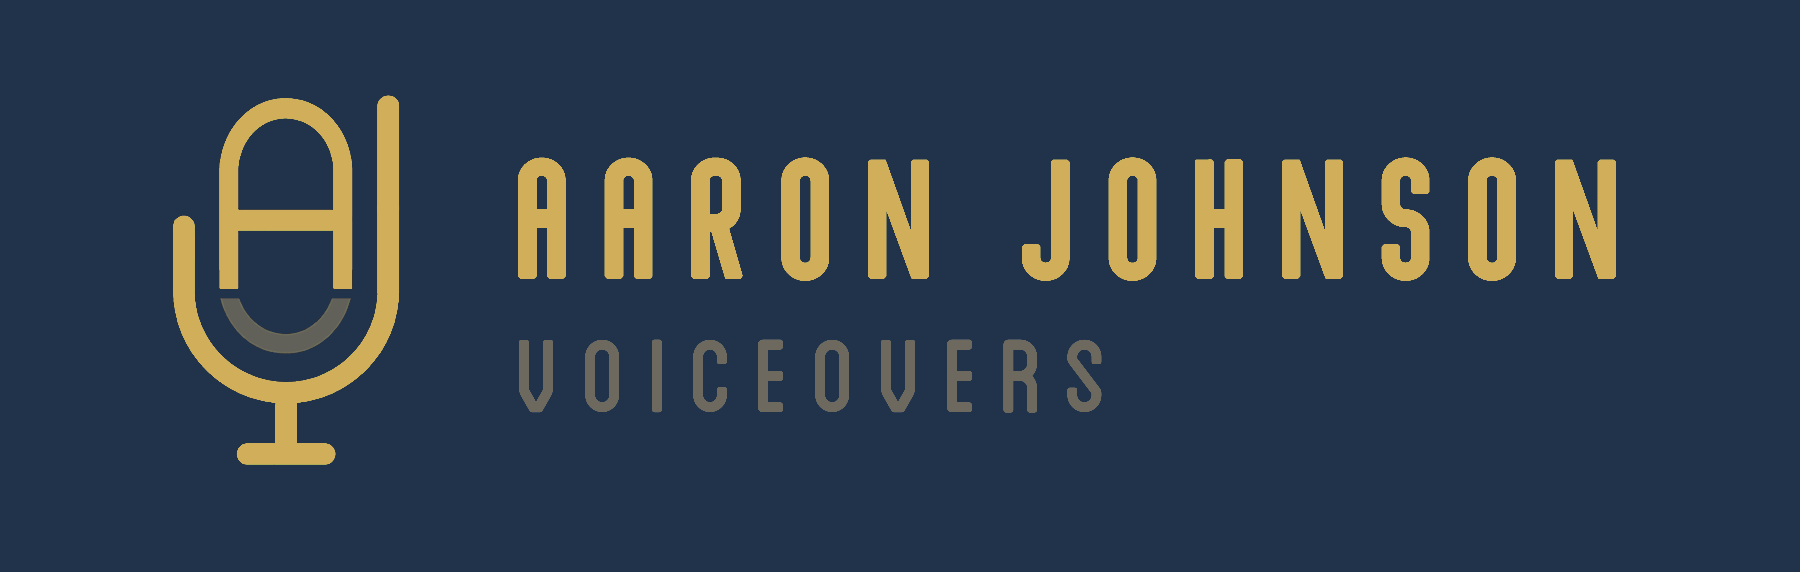 Aaron Johnson Voiceovers